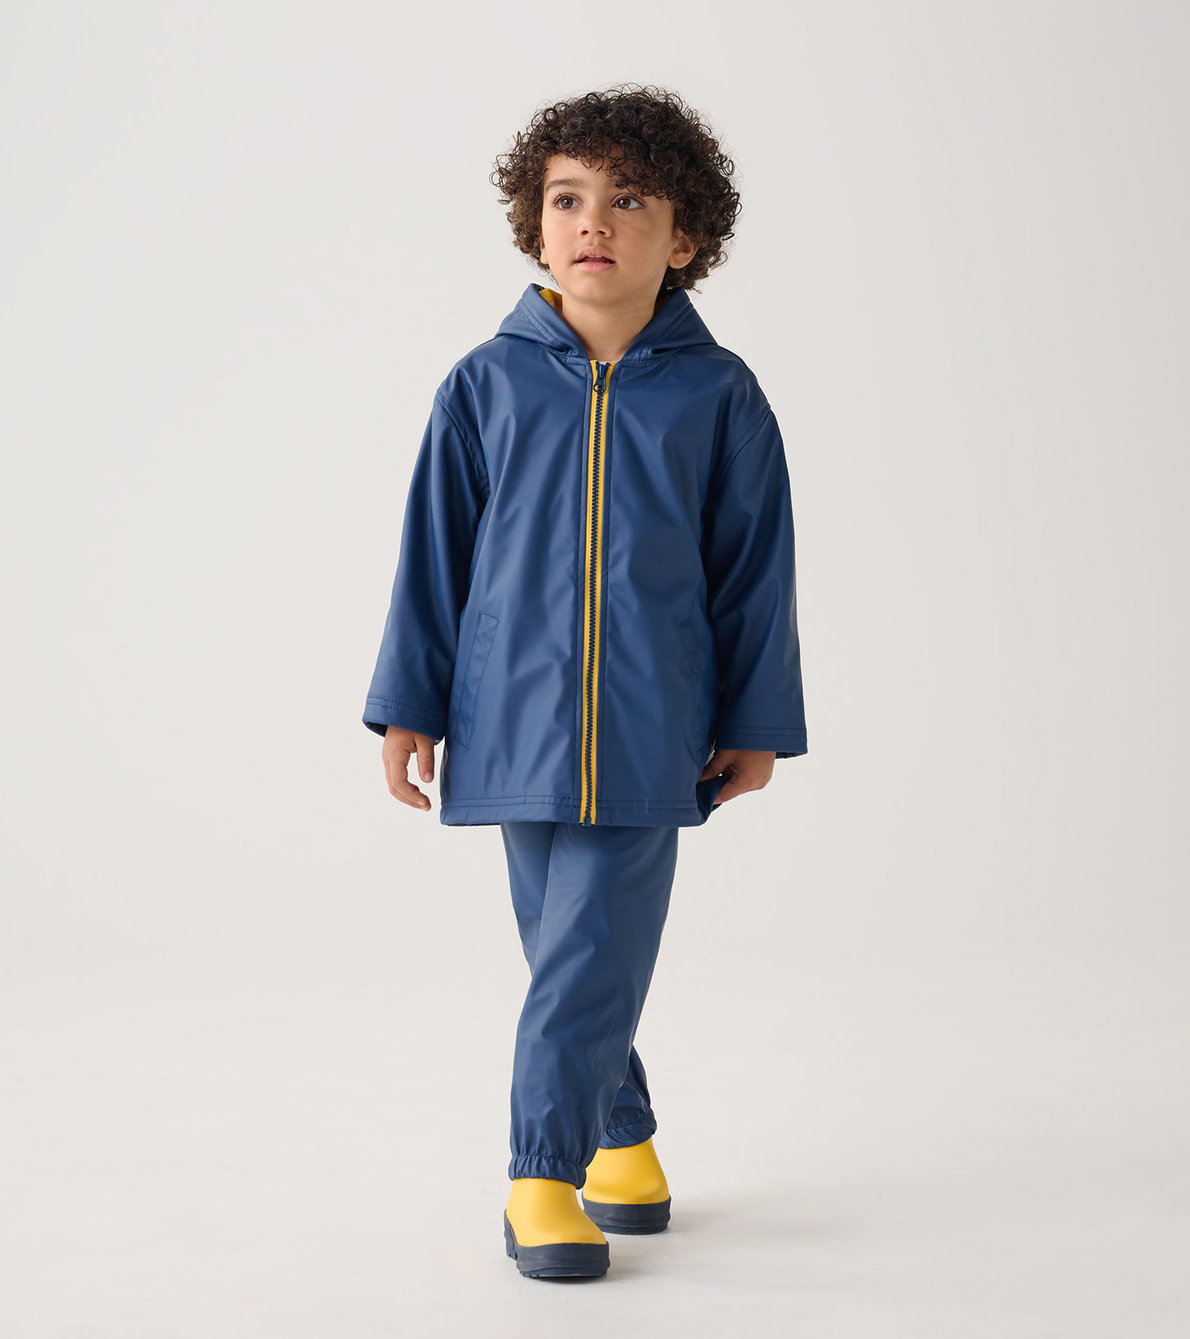 Agrandir l'image de Manteau de pluie pour enfant – Bleu marine et rayures jaunes